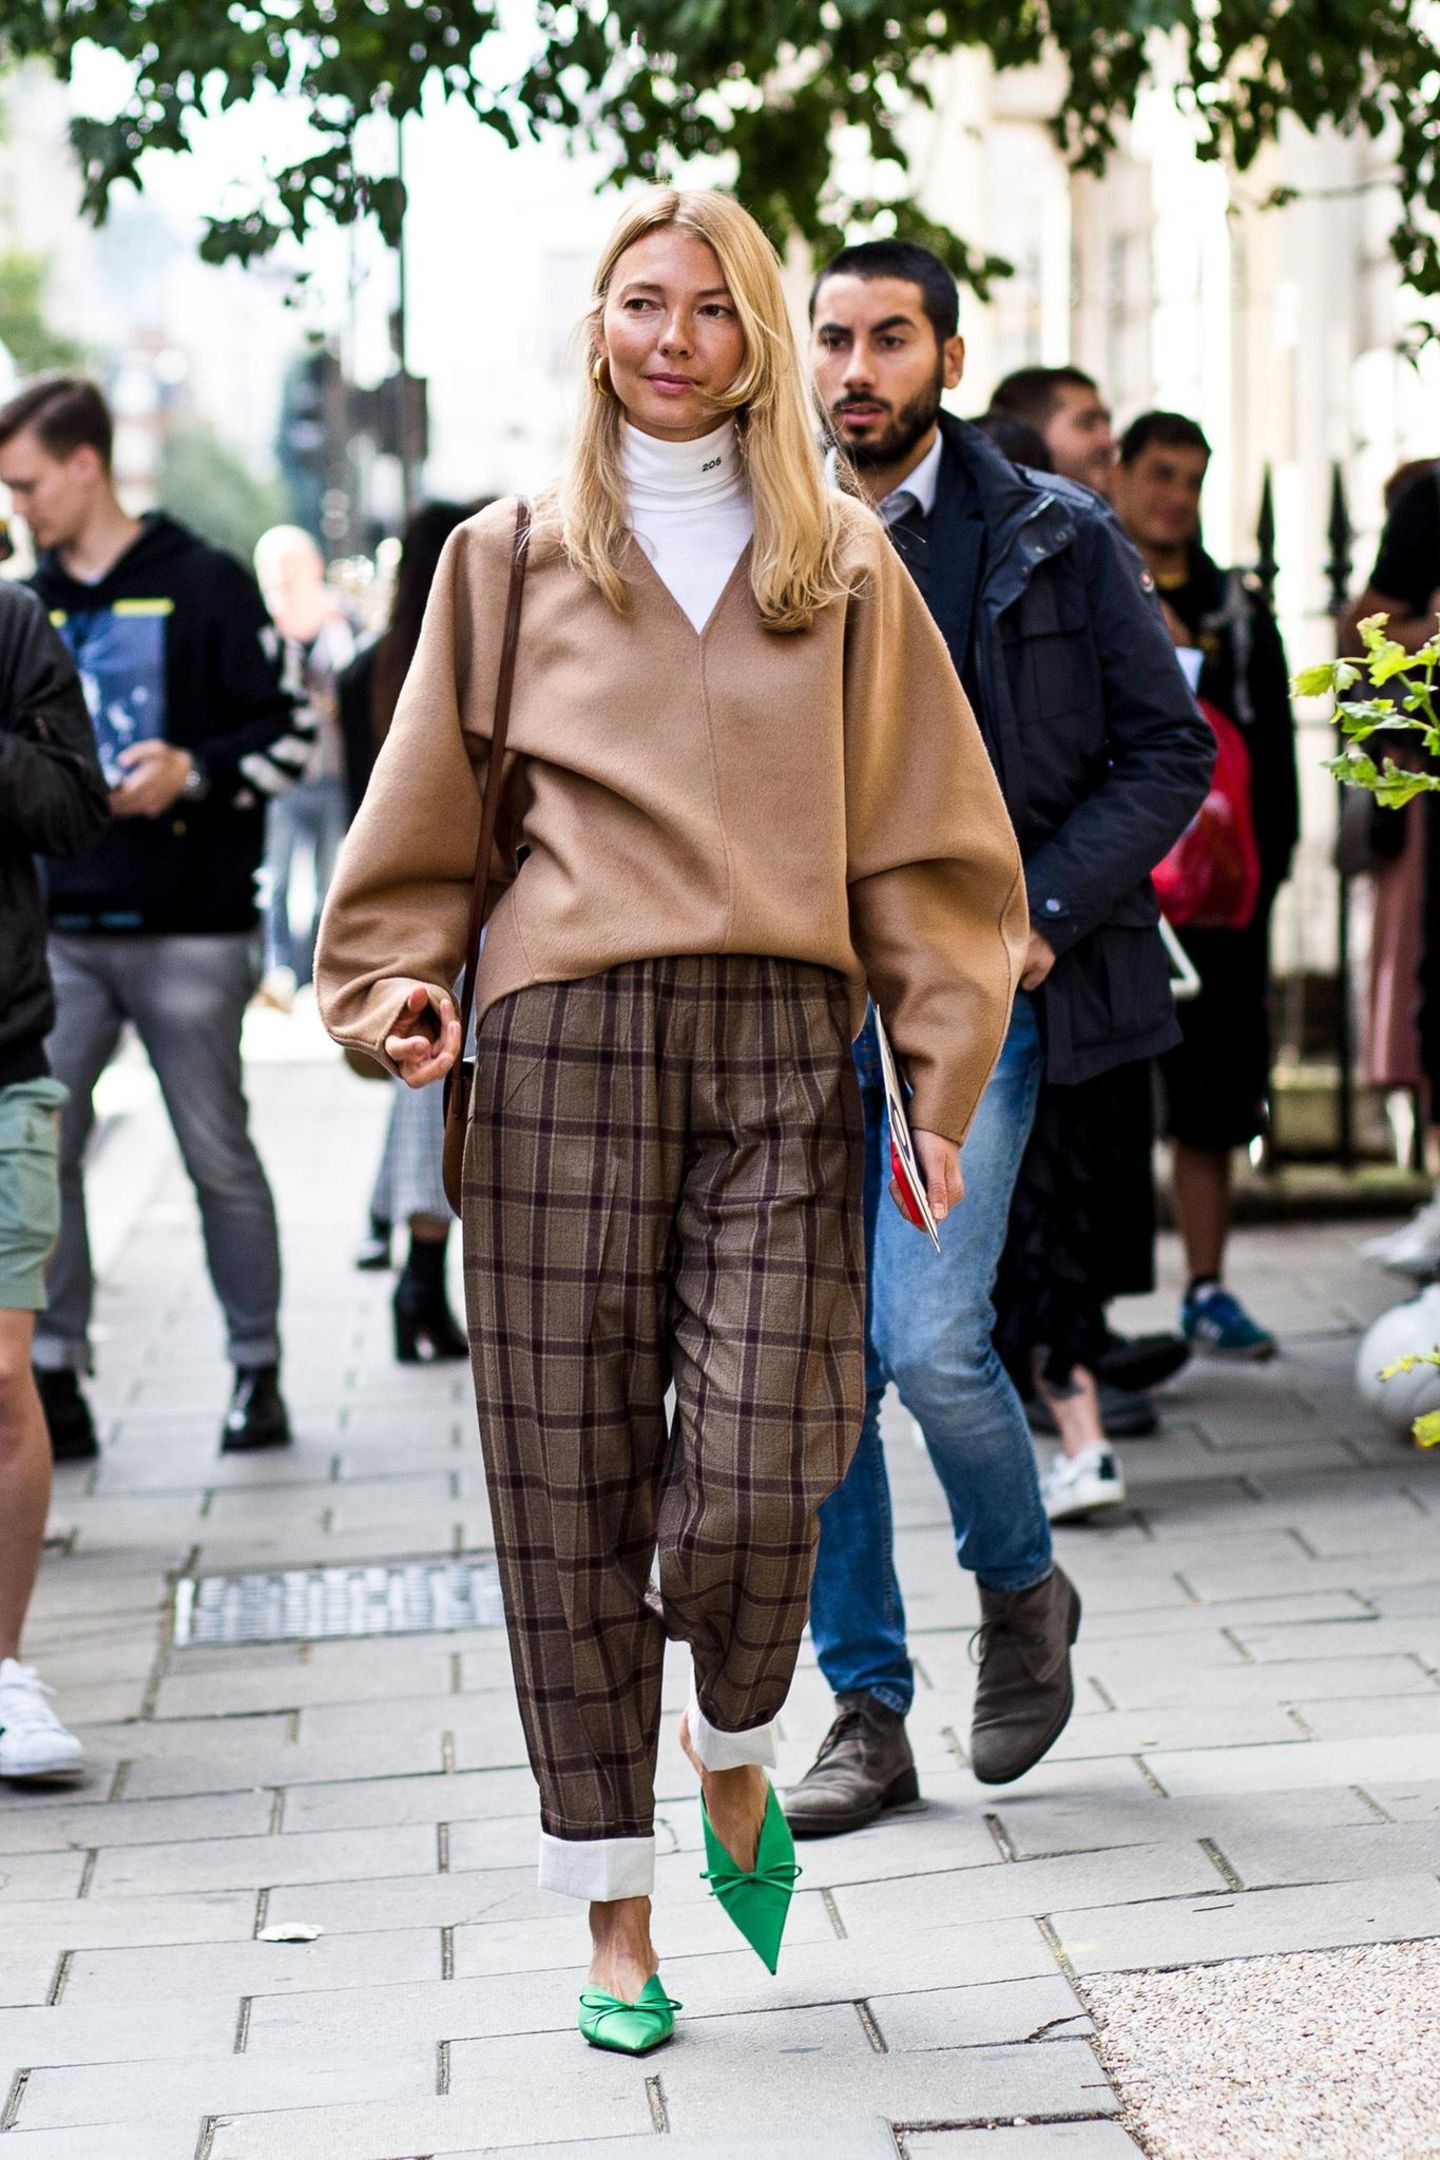 Streetstyle mit Bundfaltenhose bei der London Fashion Week